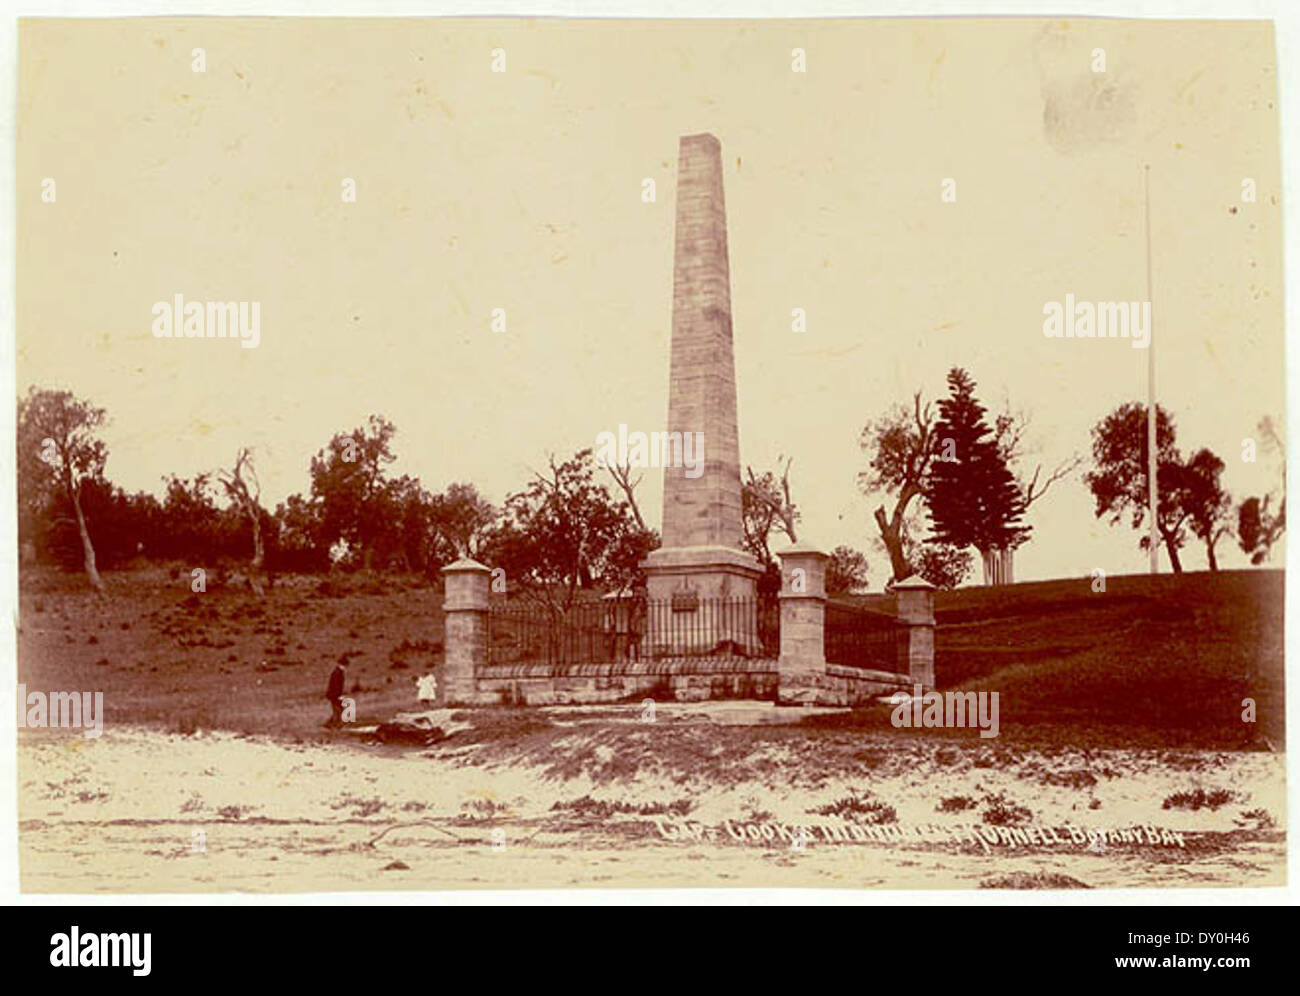 Kapitän Cooks Monument, Kurnell, ca. 1900-1910 / Star Foto Co. Stockfoto